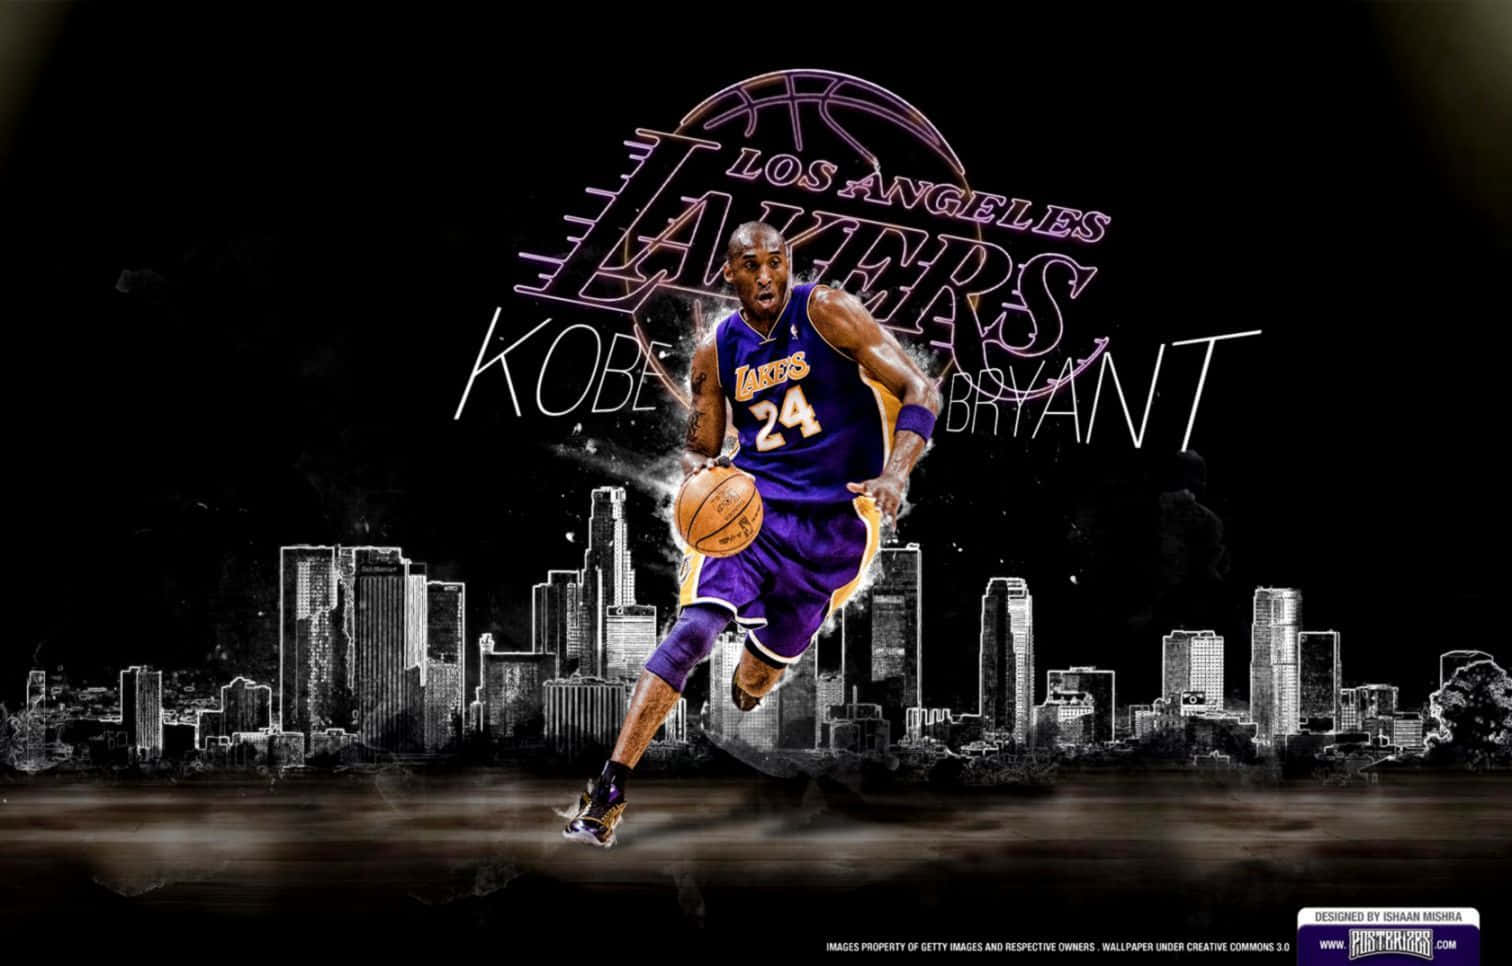 Legendarischerbasketballspieler Kobe Bryant